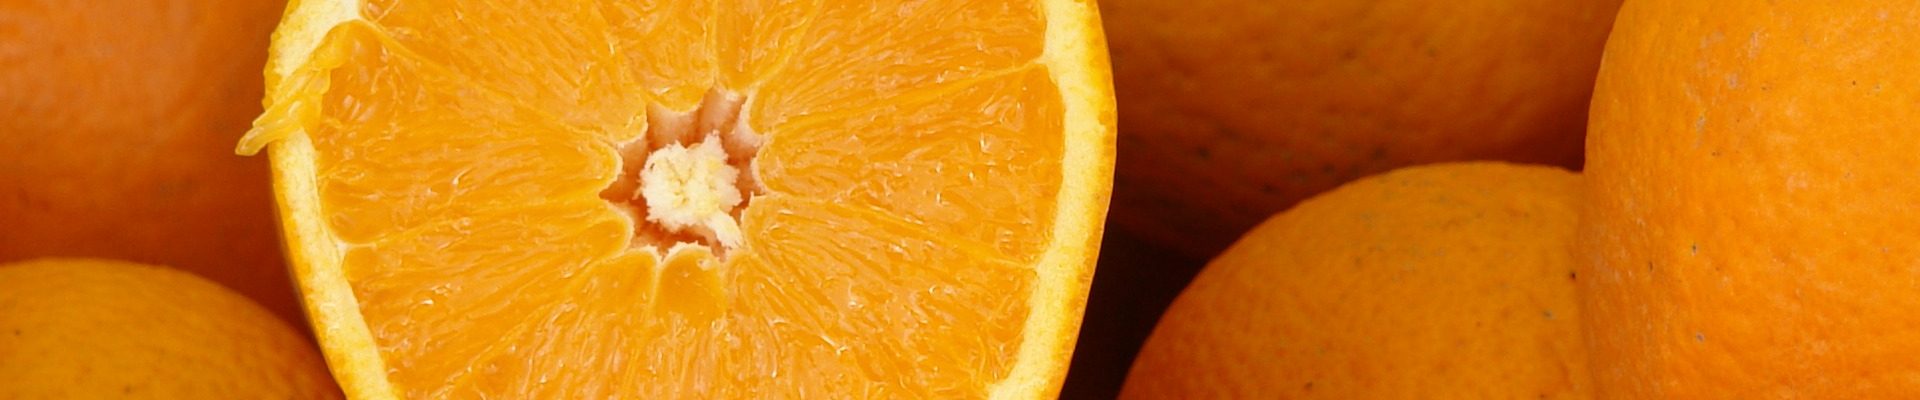 juice-oranges